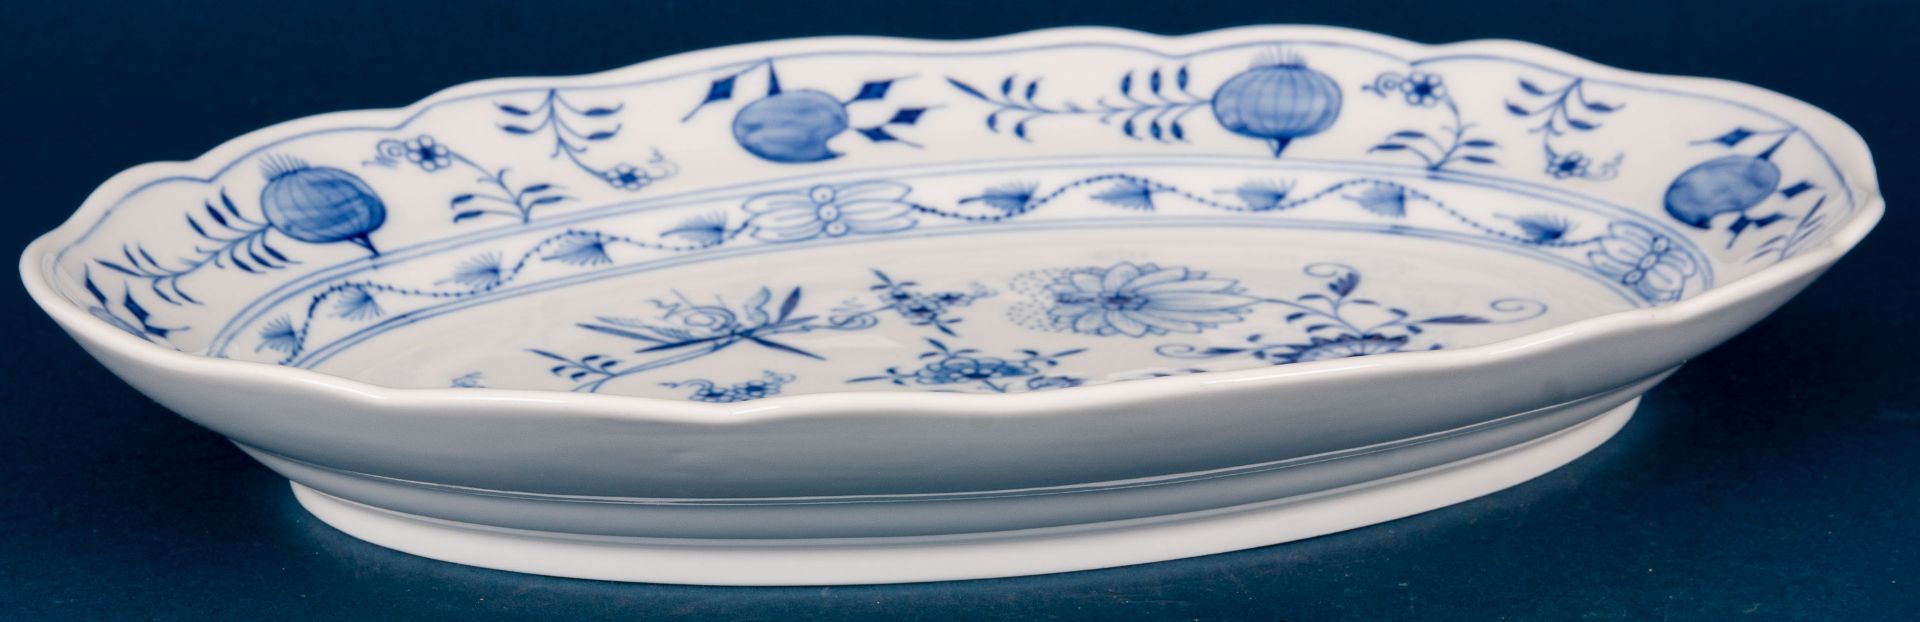 Große ovale Platte, Meissen,Schwertermarke, 1. Wahl, Weißporzellan mit blauem Zwiebelmuster-Dekor, - Image 3 of 4